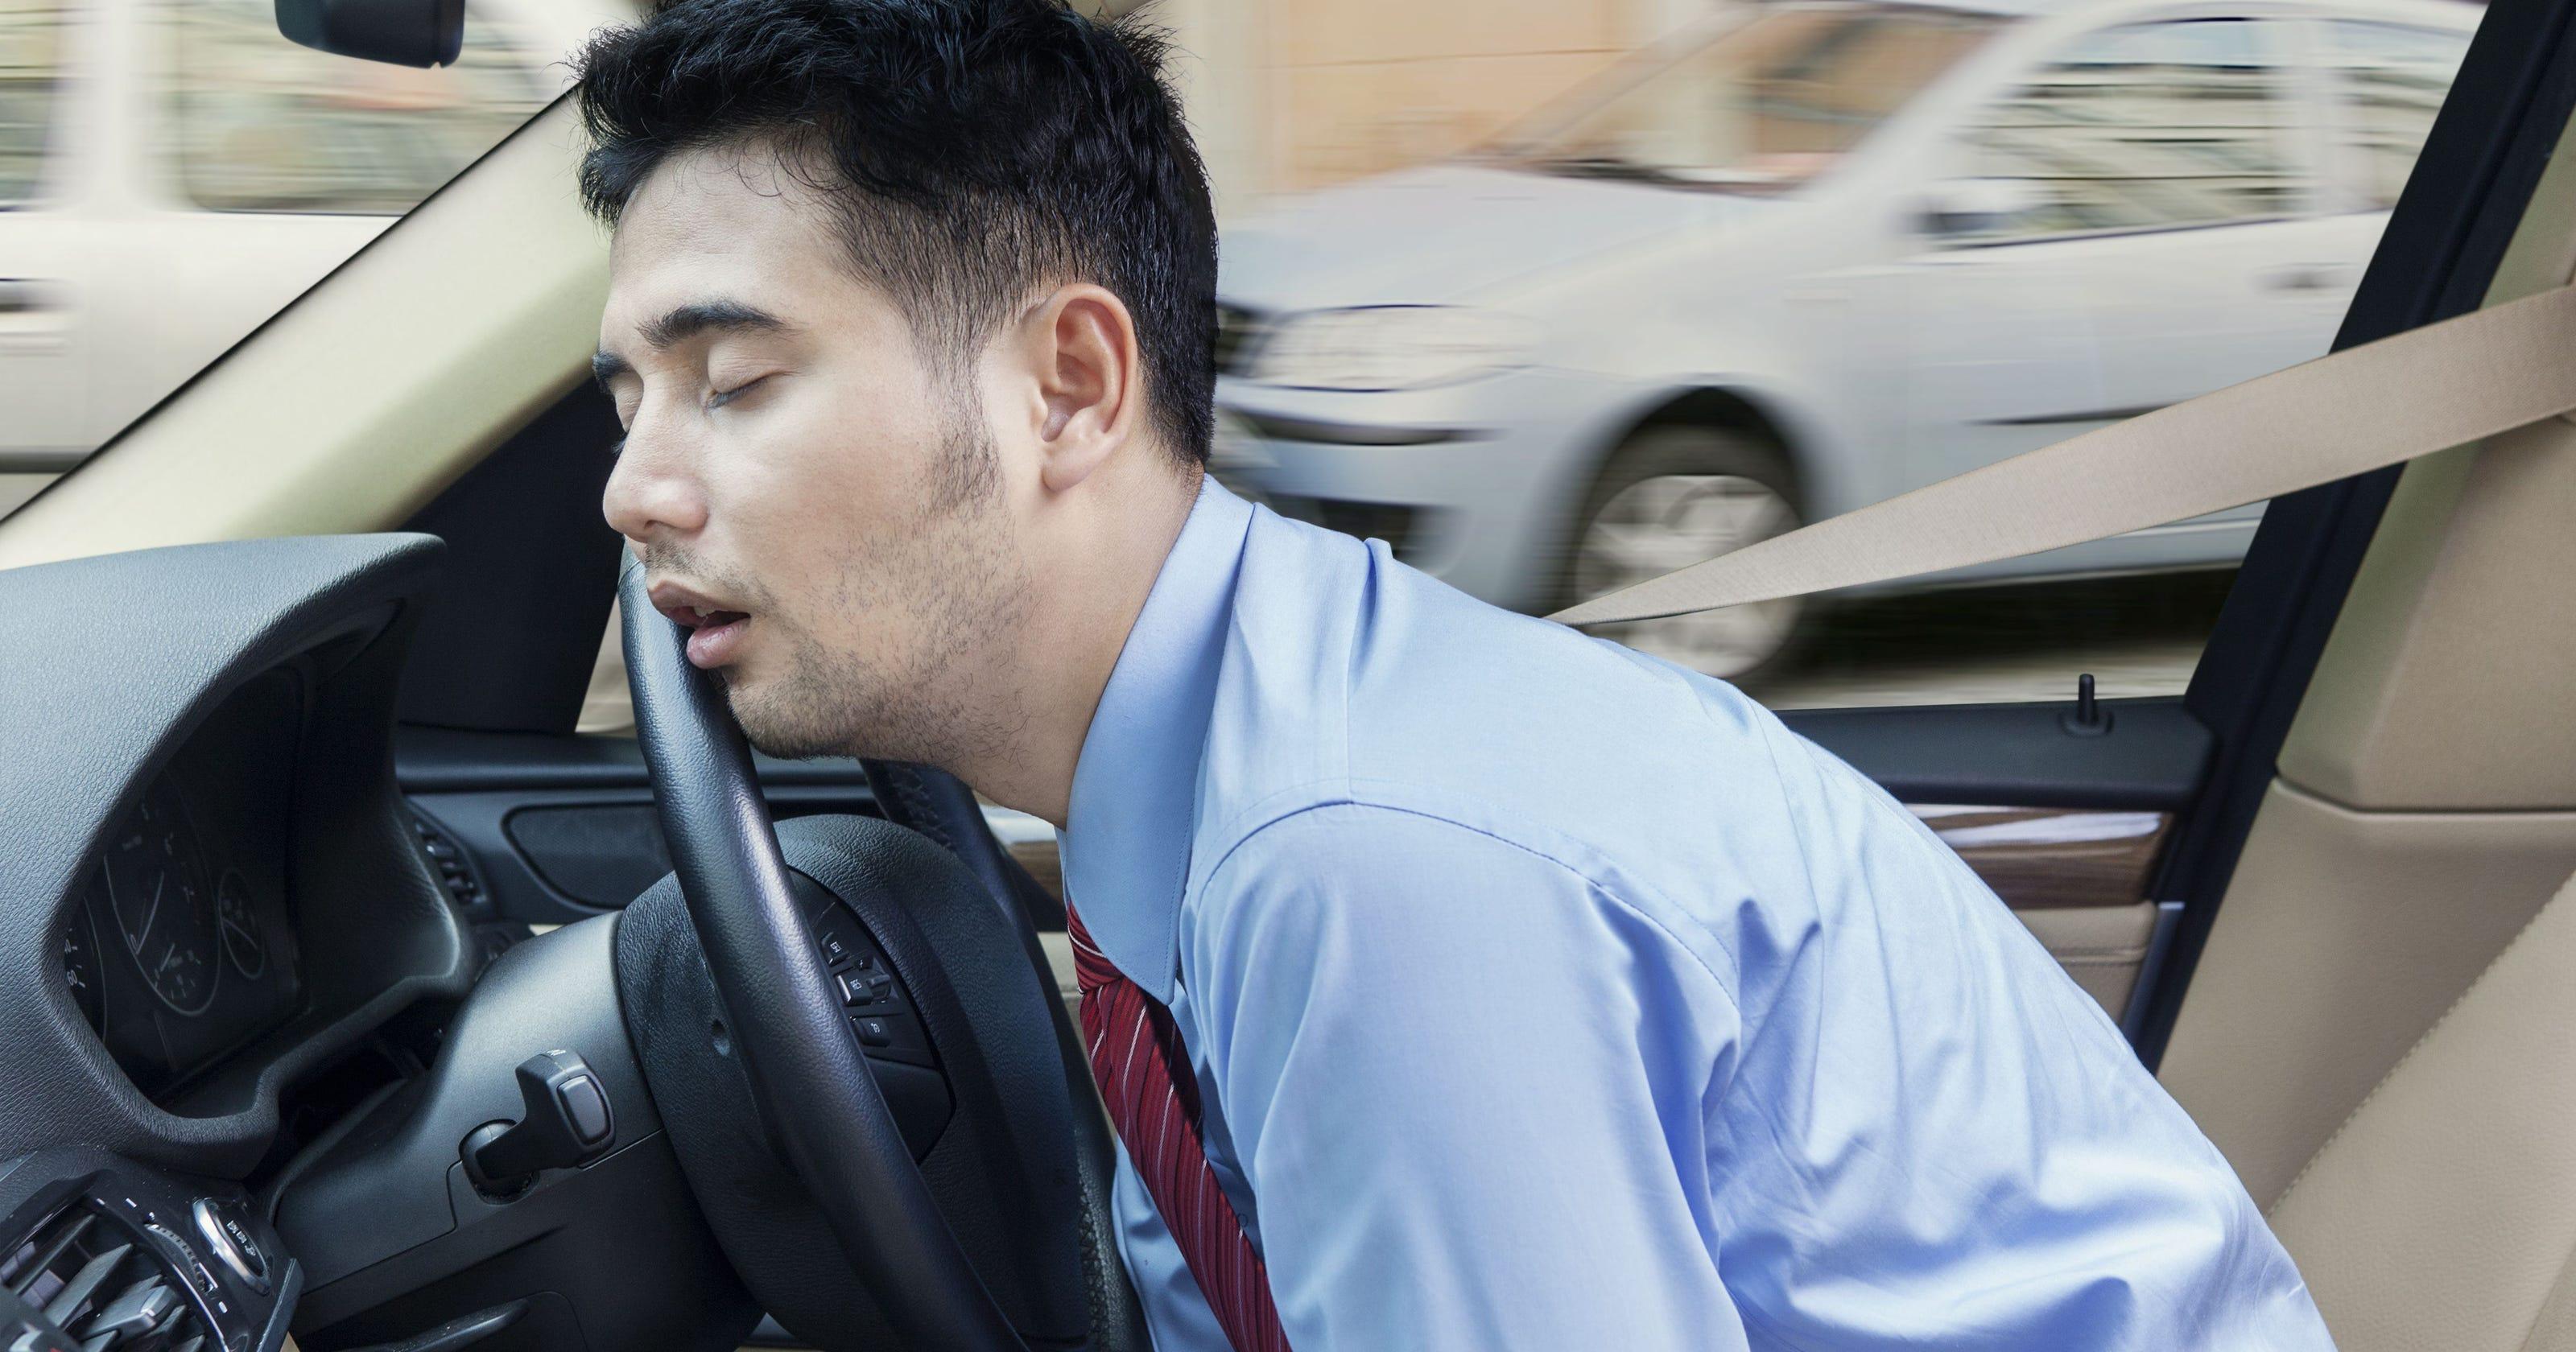 Buồn ngủ khi lái xe không chỉ là một cảm giác khó chịu mà còn là một nguy hiểm đối với tất cả người tham gia giao thông. Tuy nhiên, nếu bạn có kinh nghiệm lái xe, bạn có thể biết cách để giảm thiểu tình trạng buồn ngủ. Hãy xem hình ảnh liên quan đến từ khoá \